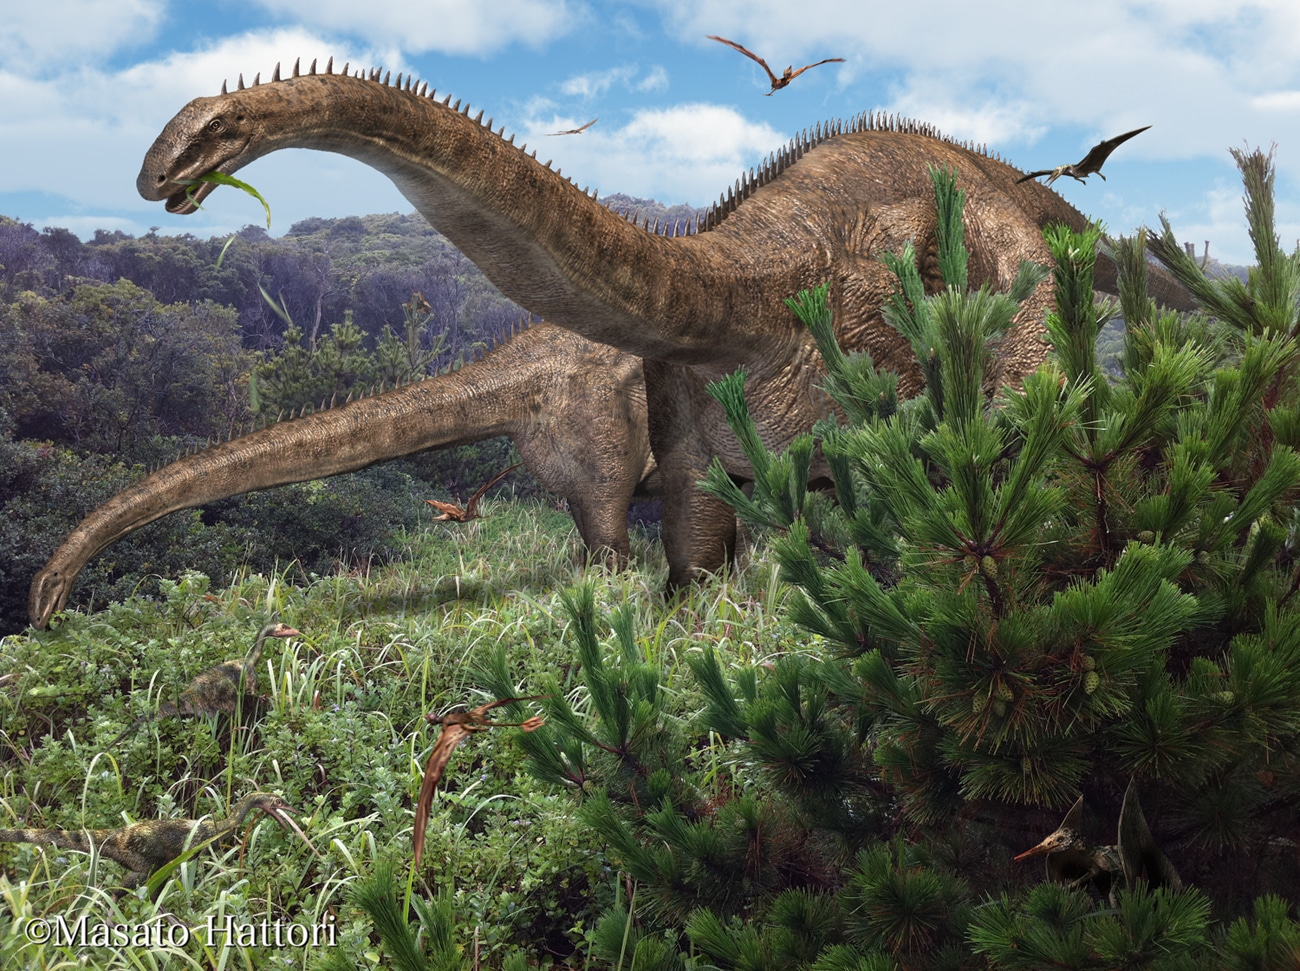 Диплодок динозавр